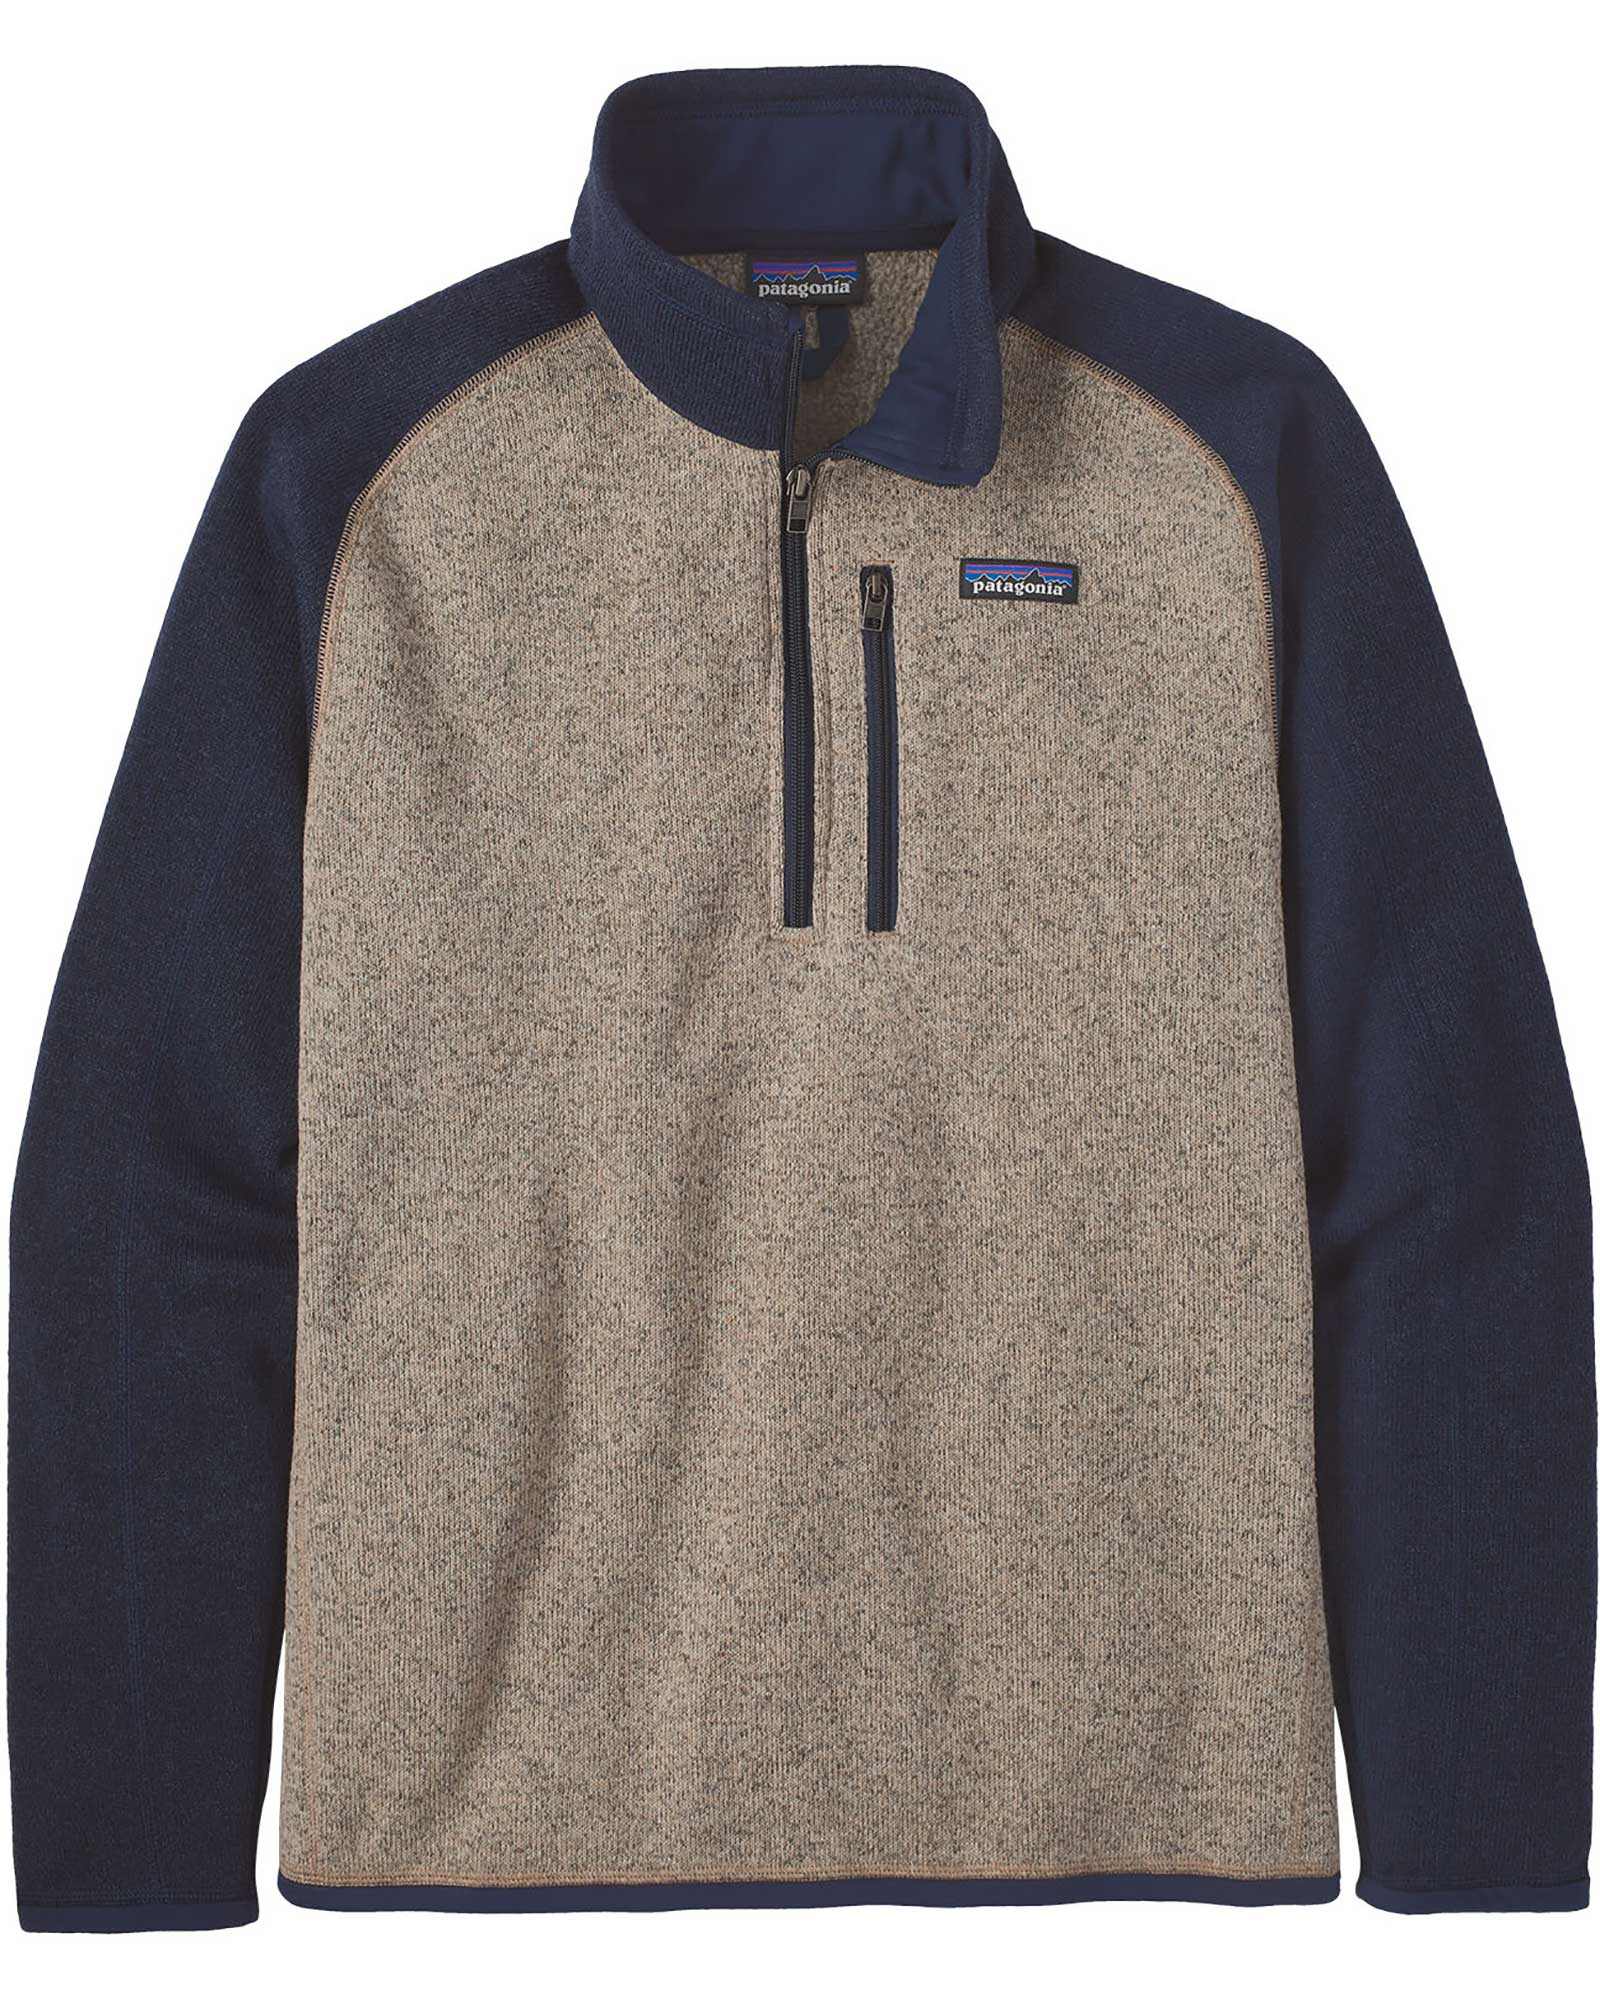 Patagonia Better Sweater Men’s 1/4 Zip Fleece - Oar Tan XL